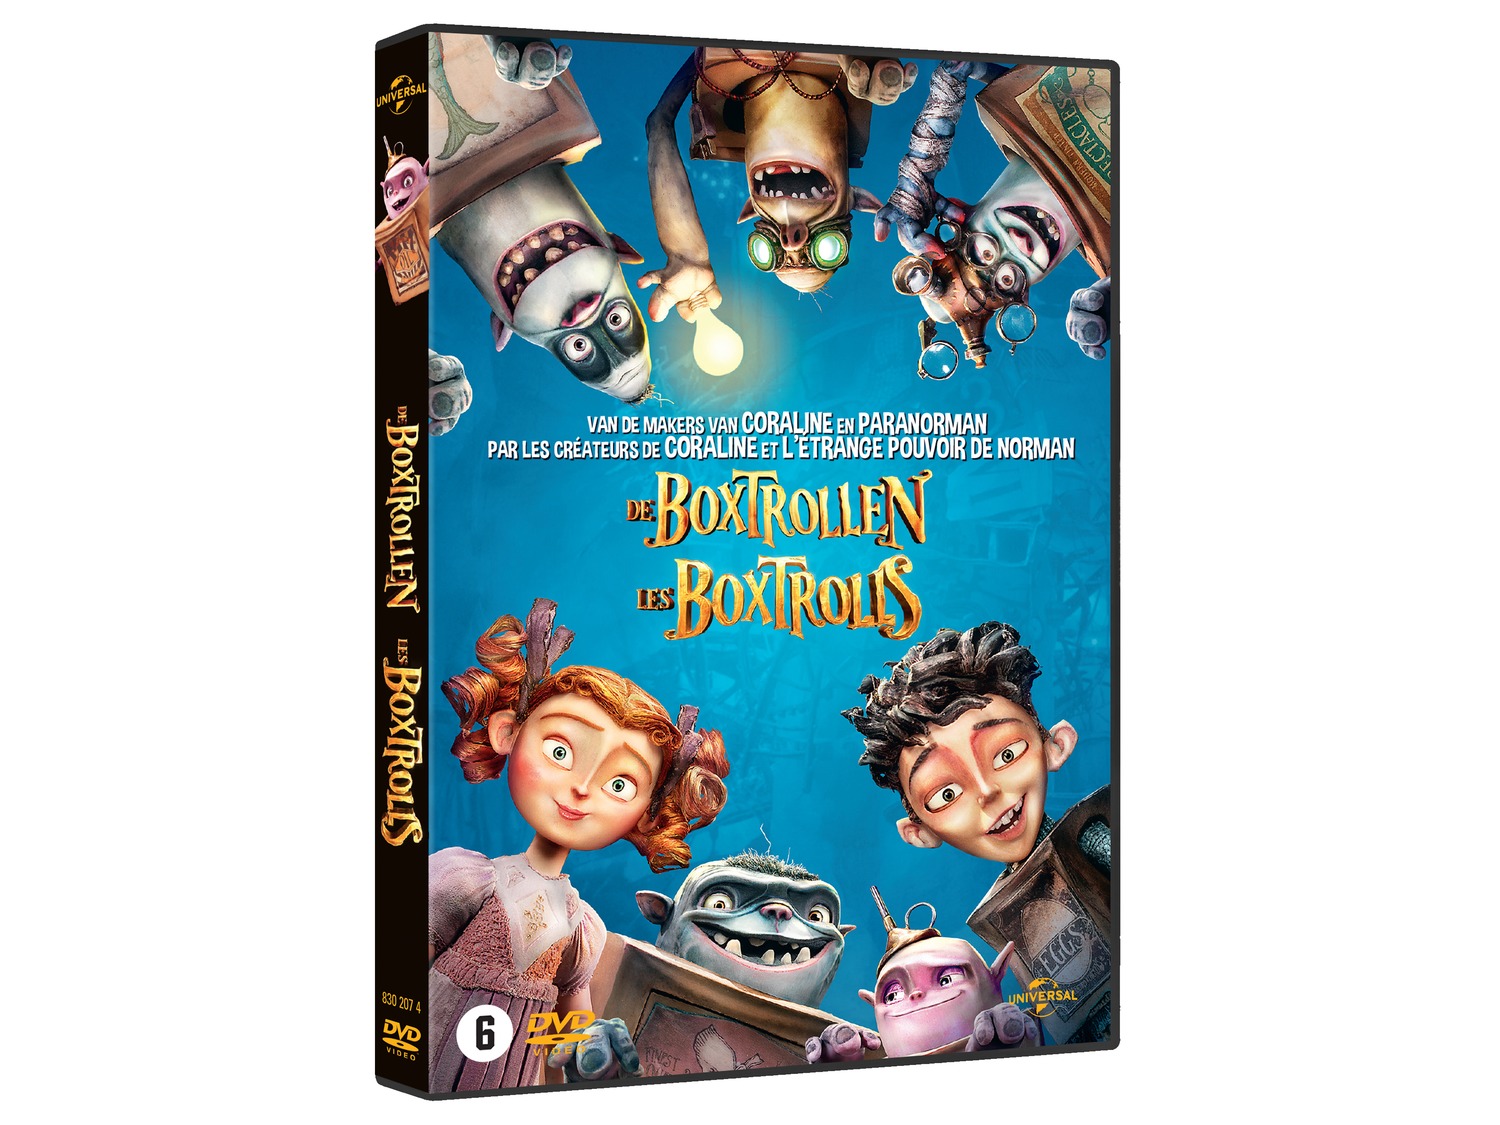 Zenuw Uitgaand Misbruik Universal Pictures DVD voor kinderen